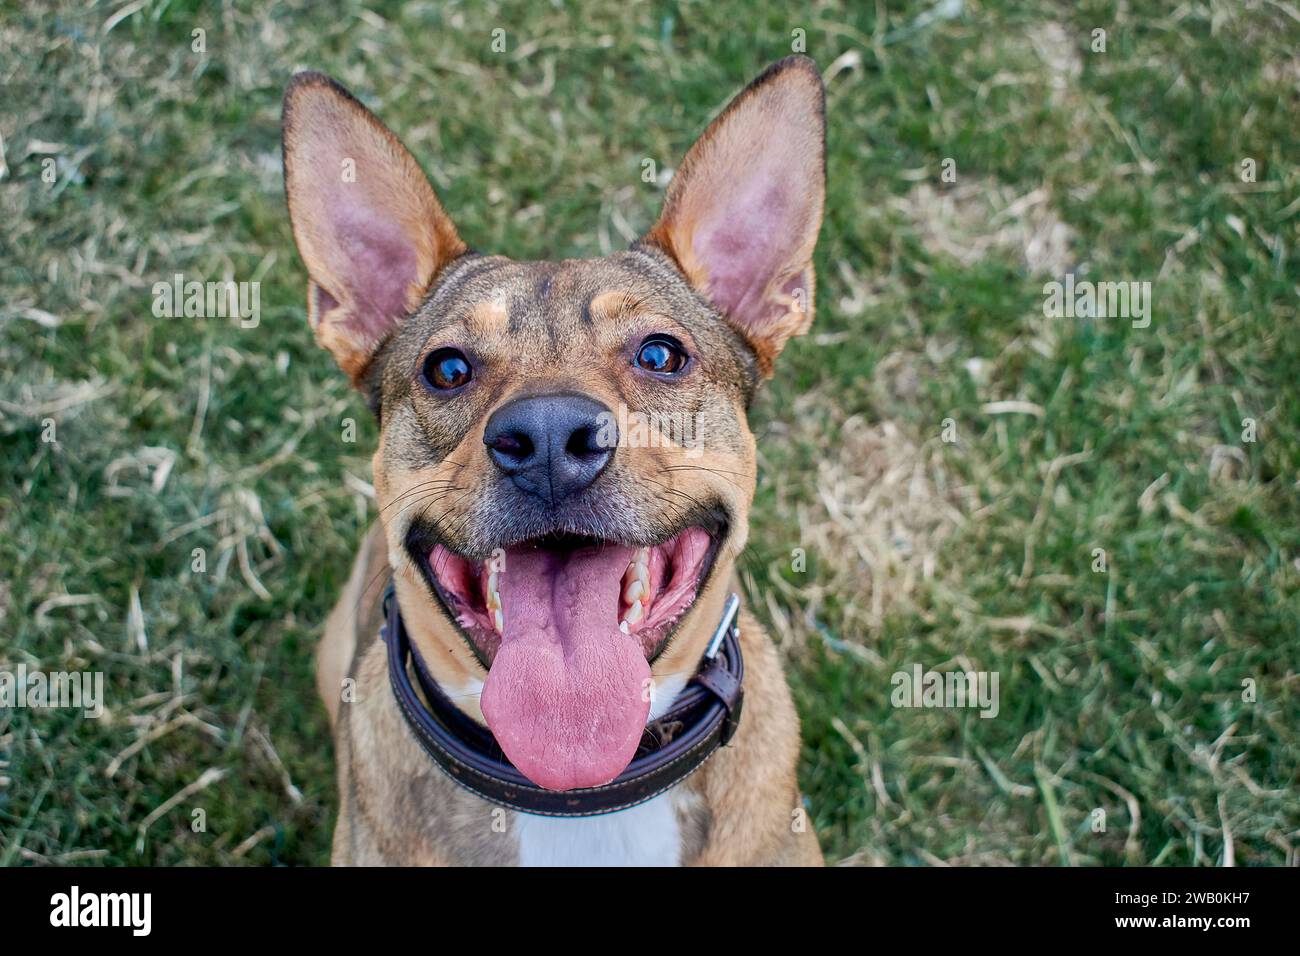 Vue frontale d'un chien brun avec de grandes oreilles. L'animal est heureux et a la langue dehors. Il porte un col brun comme concept de bonheur. Banque D'Images